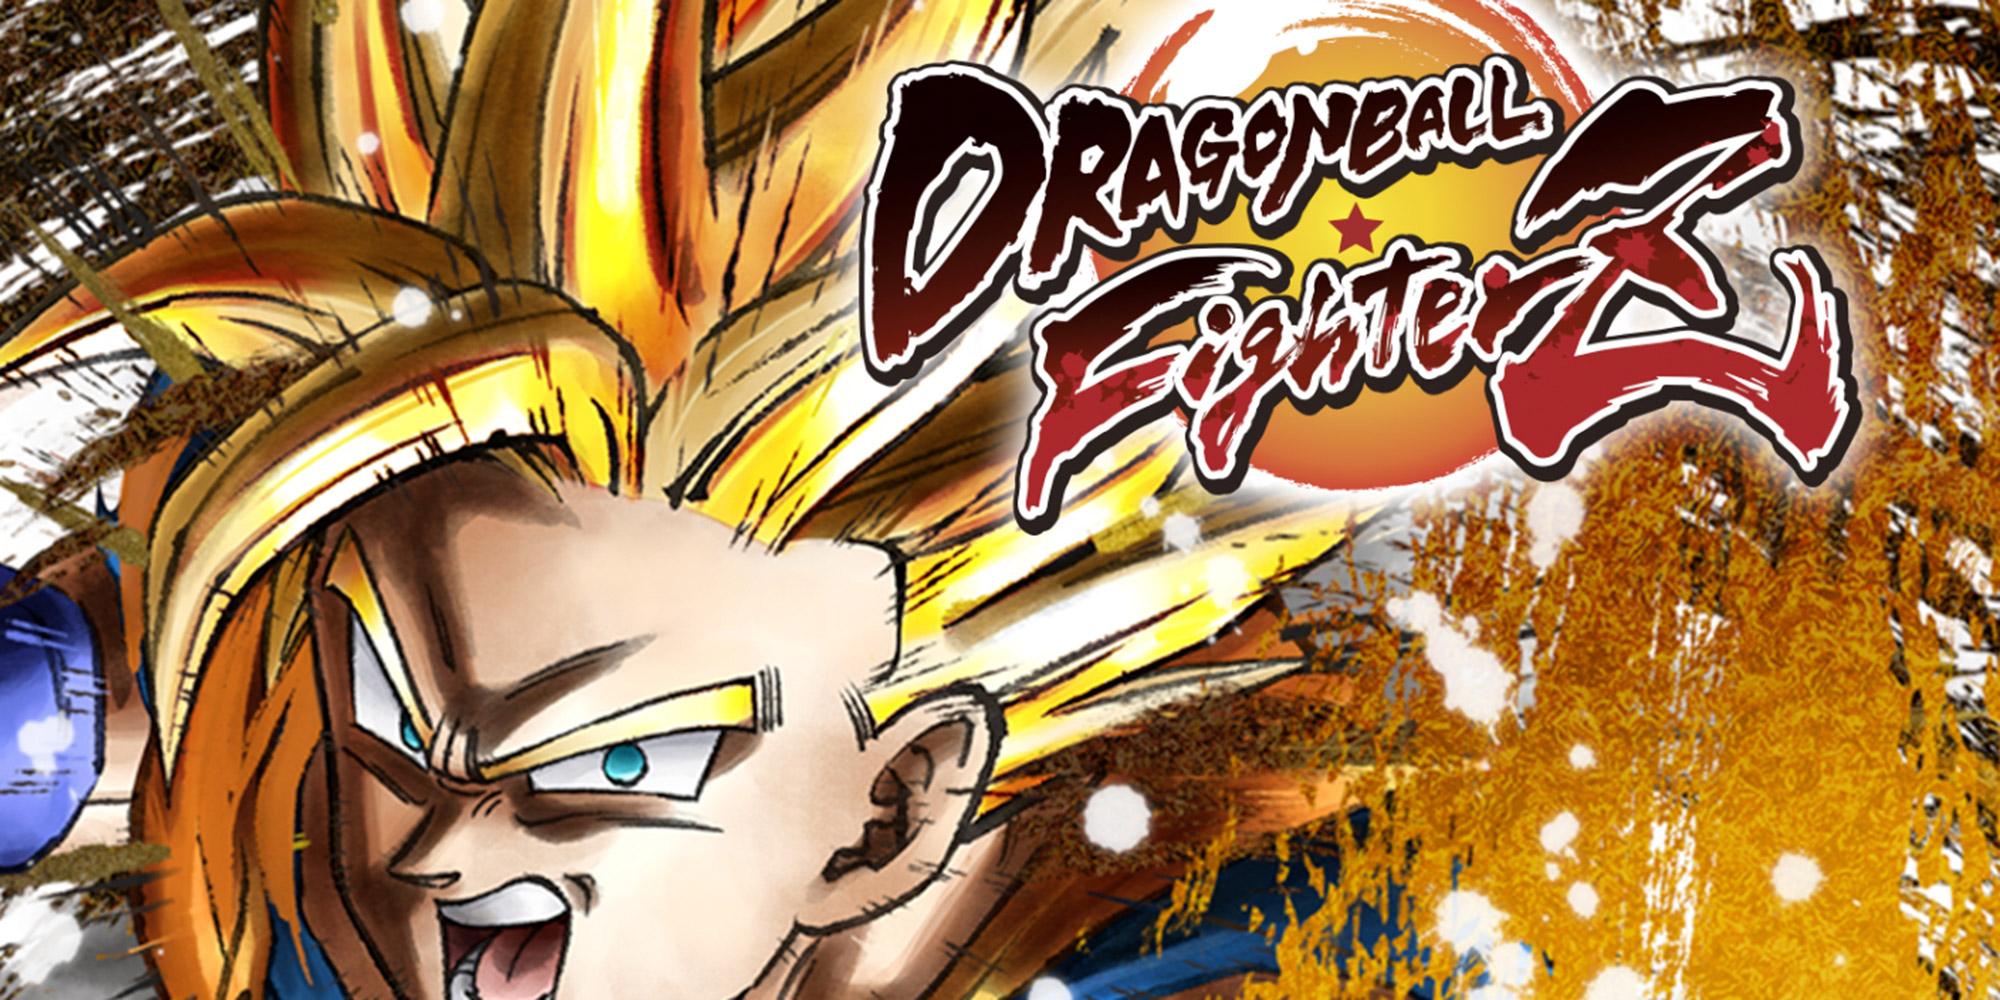  Date de sortie, éditions et screenshots pour Dragon Ball FighterZ !